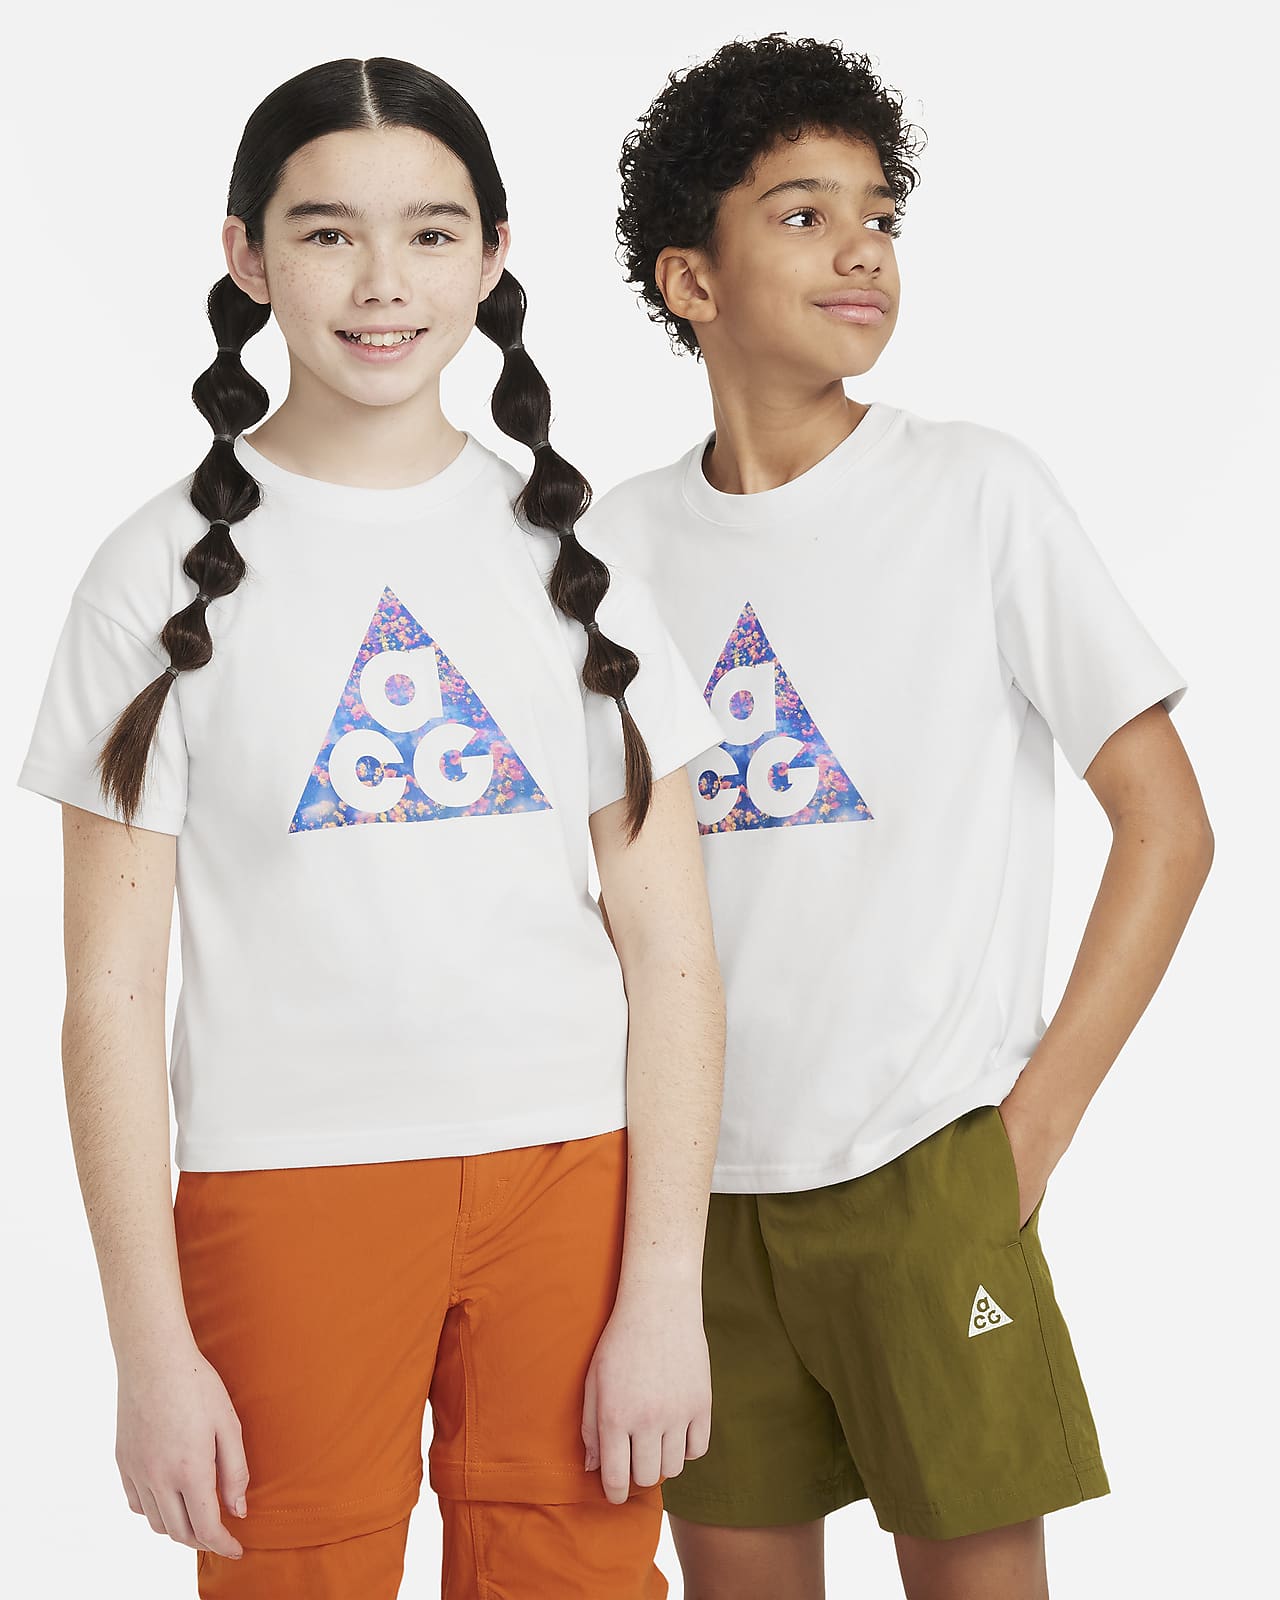 T-shirt dla dużych dzieci Nike ACG